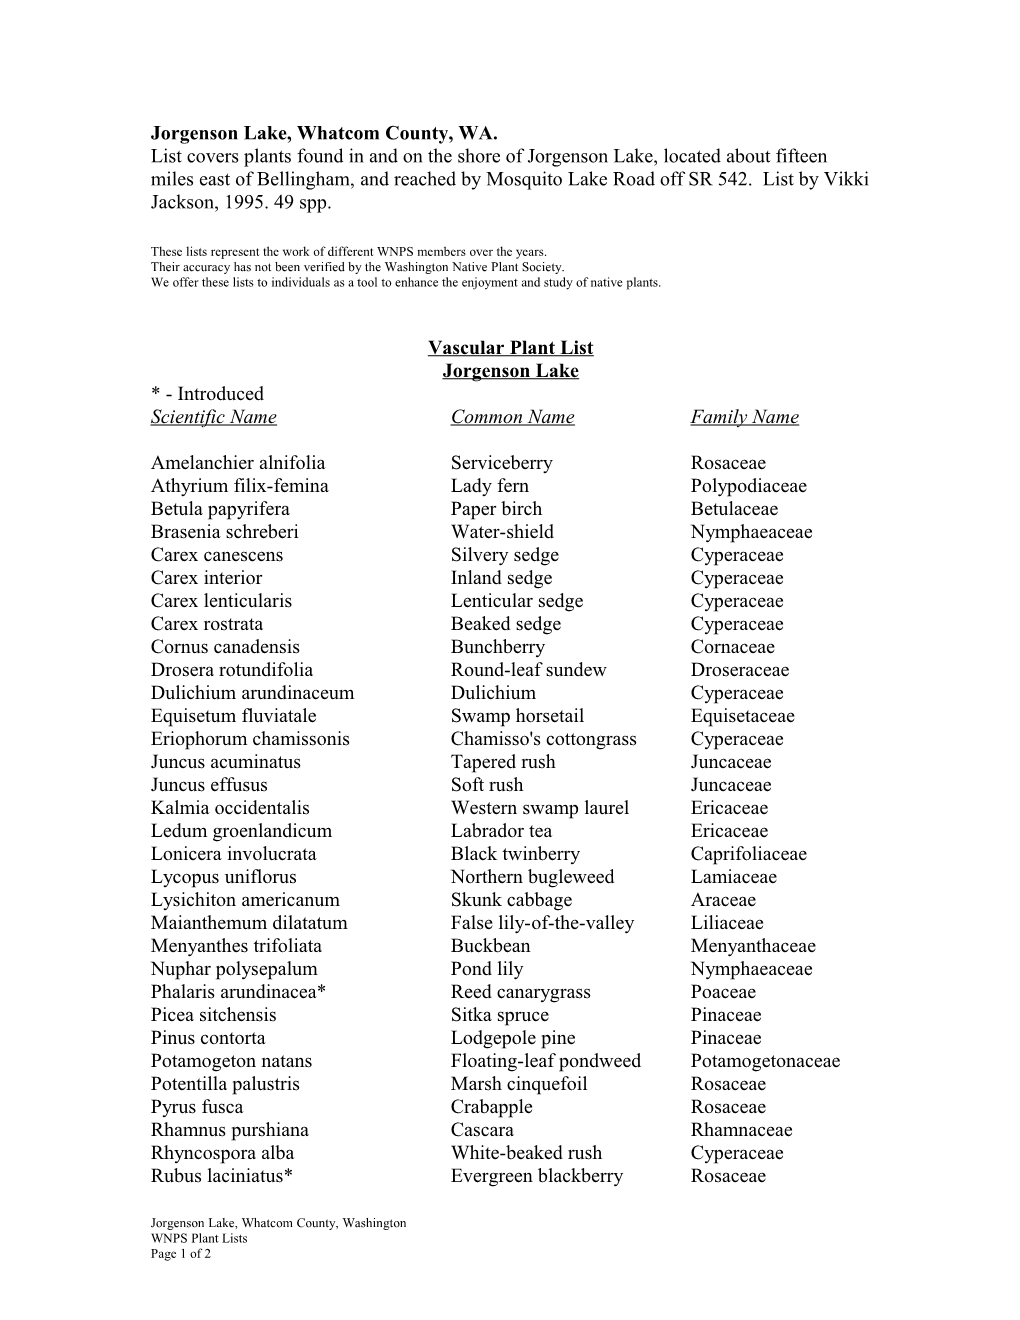 Vascular Plant List s11